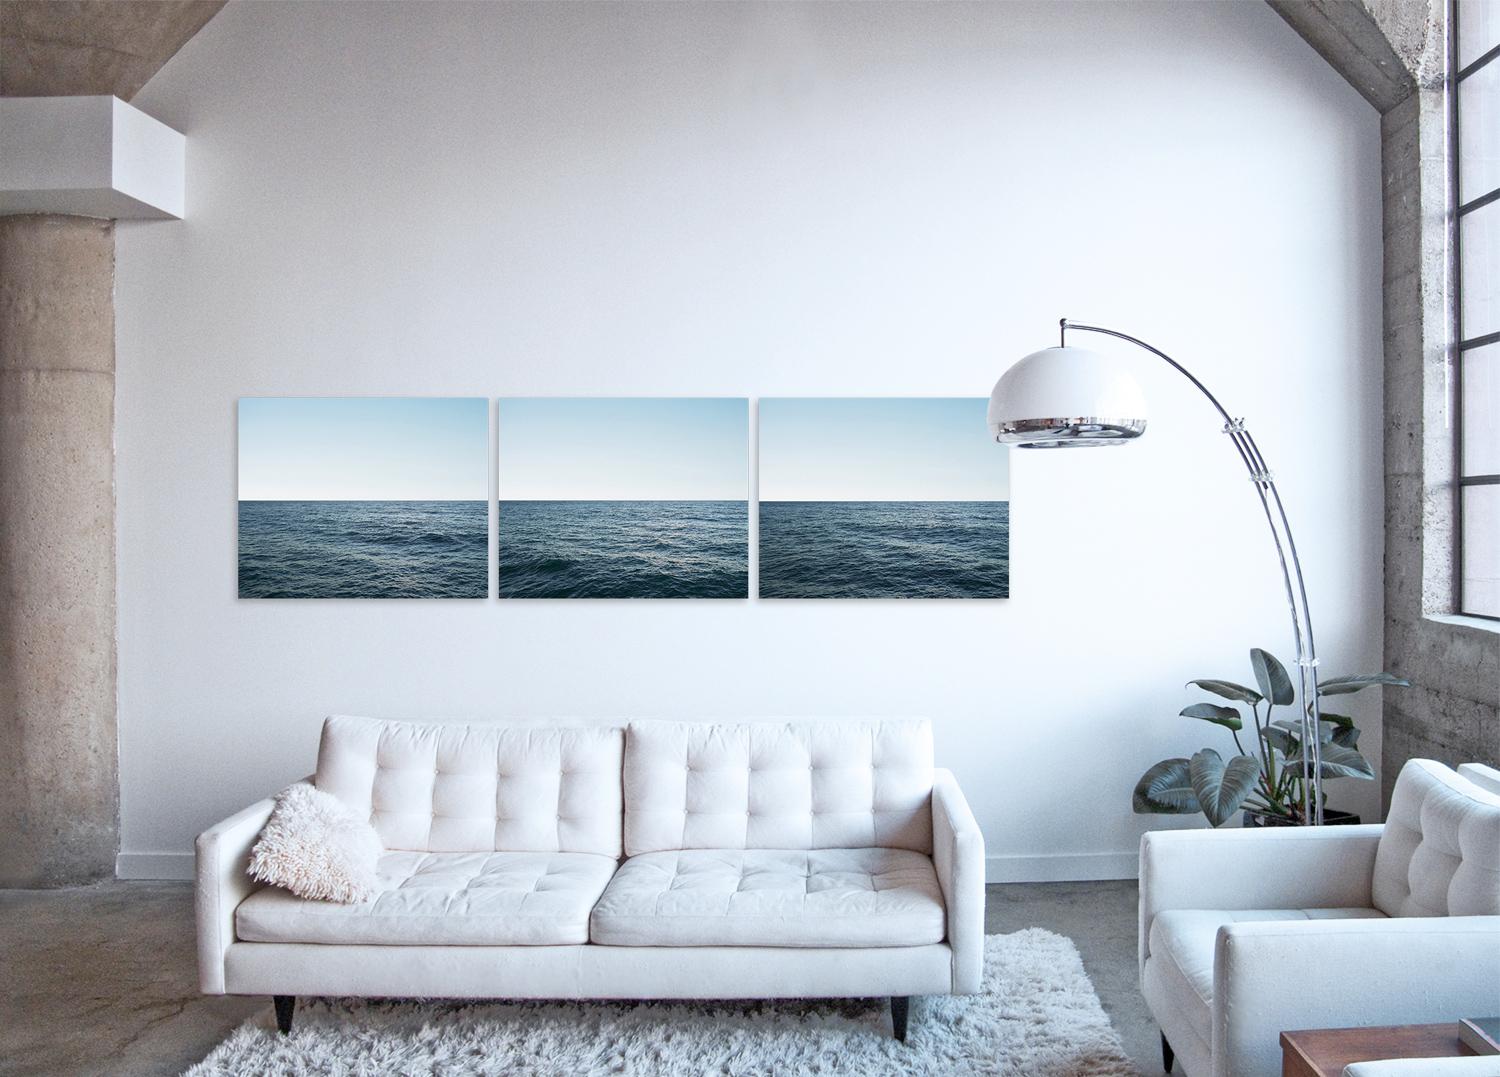 Photographie hypnotique à grande échelle de la série Seascape de l'artiste, un ensemble d'œuvres capturant les surfaces tactiles et la nature marine monochromatique de l'eau océanique et des paysages nuageux.

Seascape XI - Triptyque de Frank